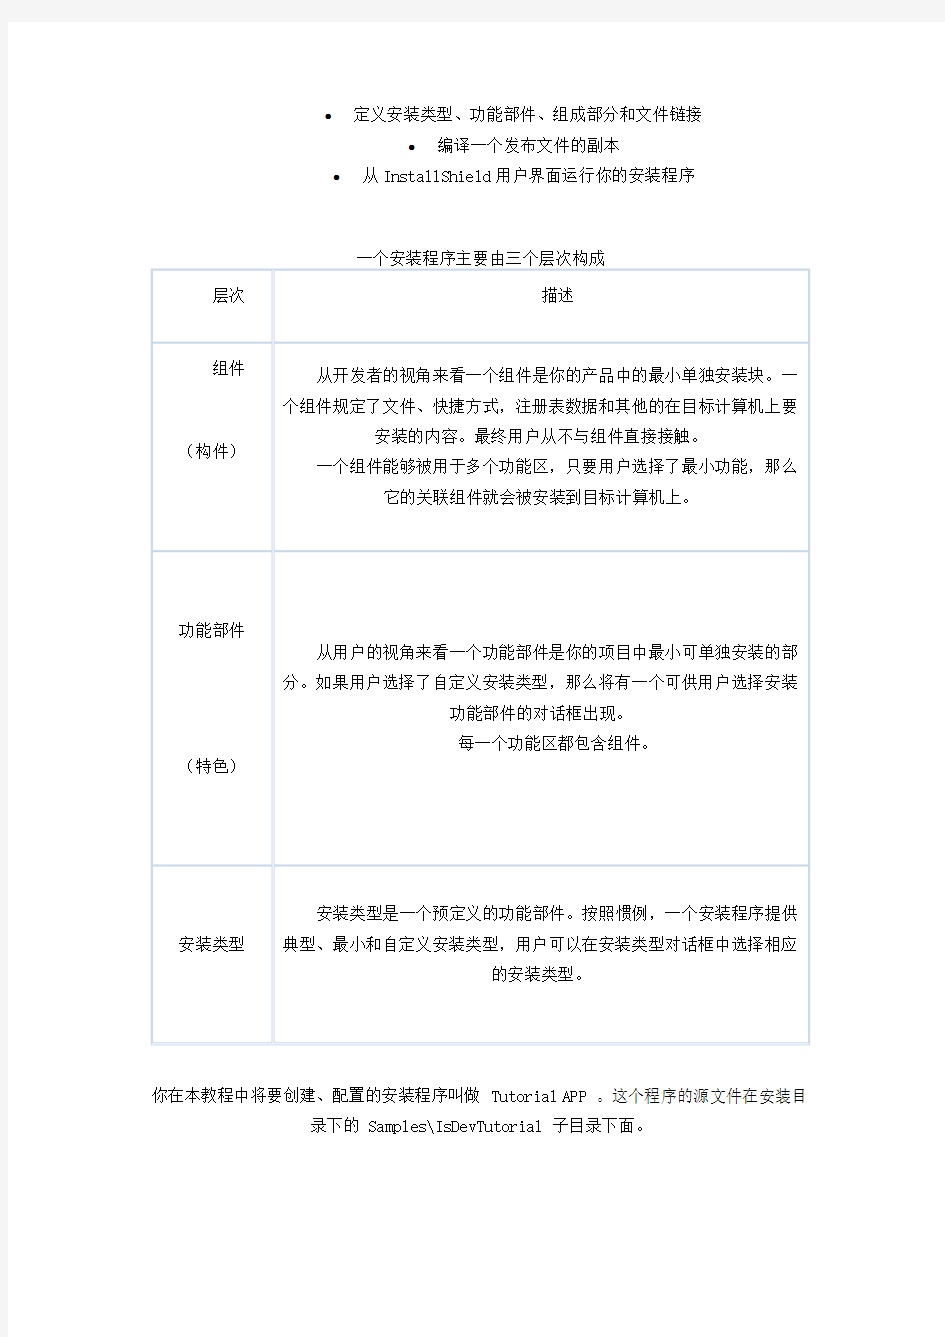 Installshield+中文系列教程